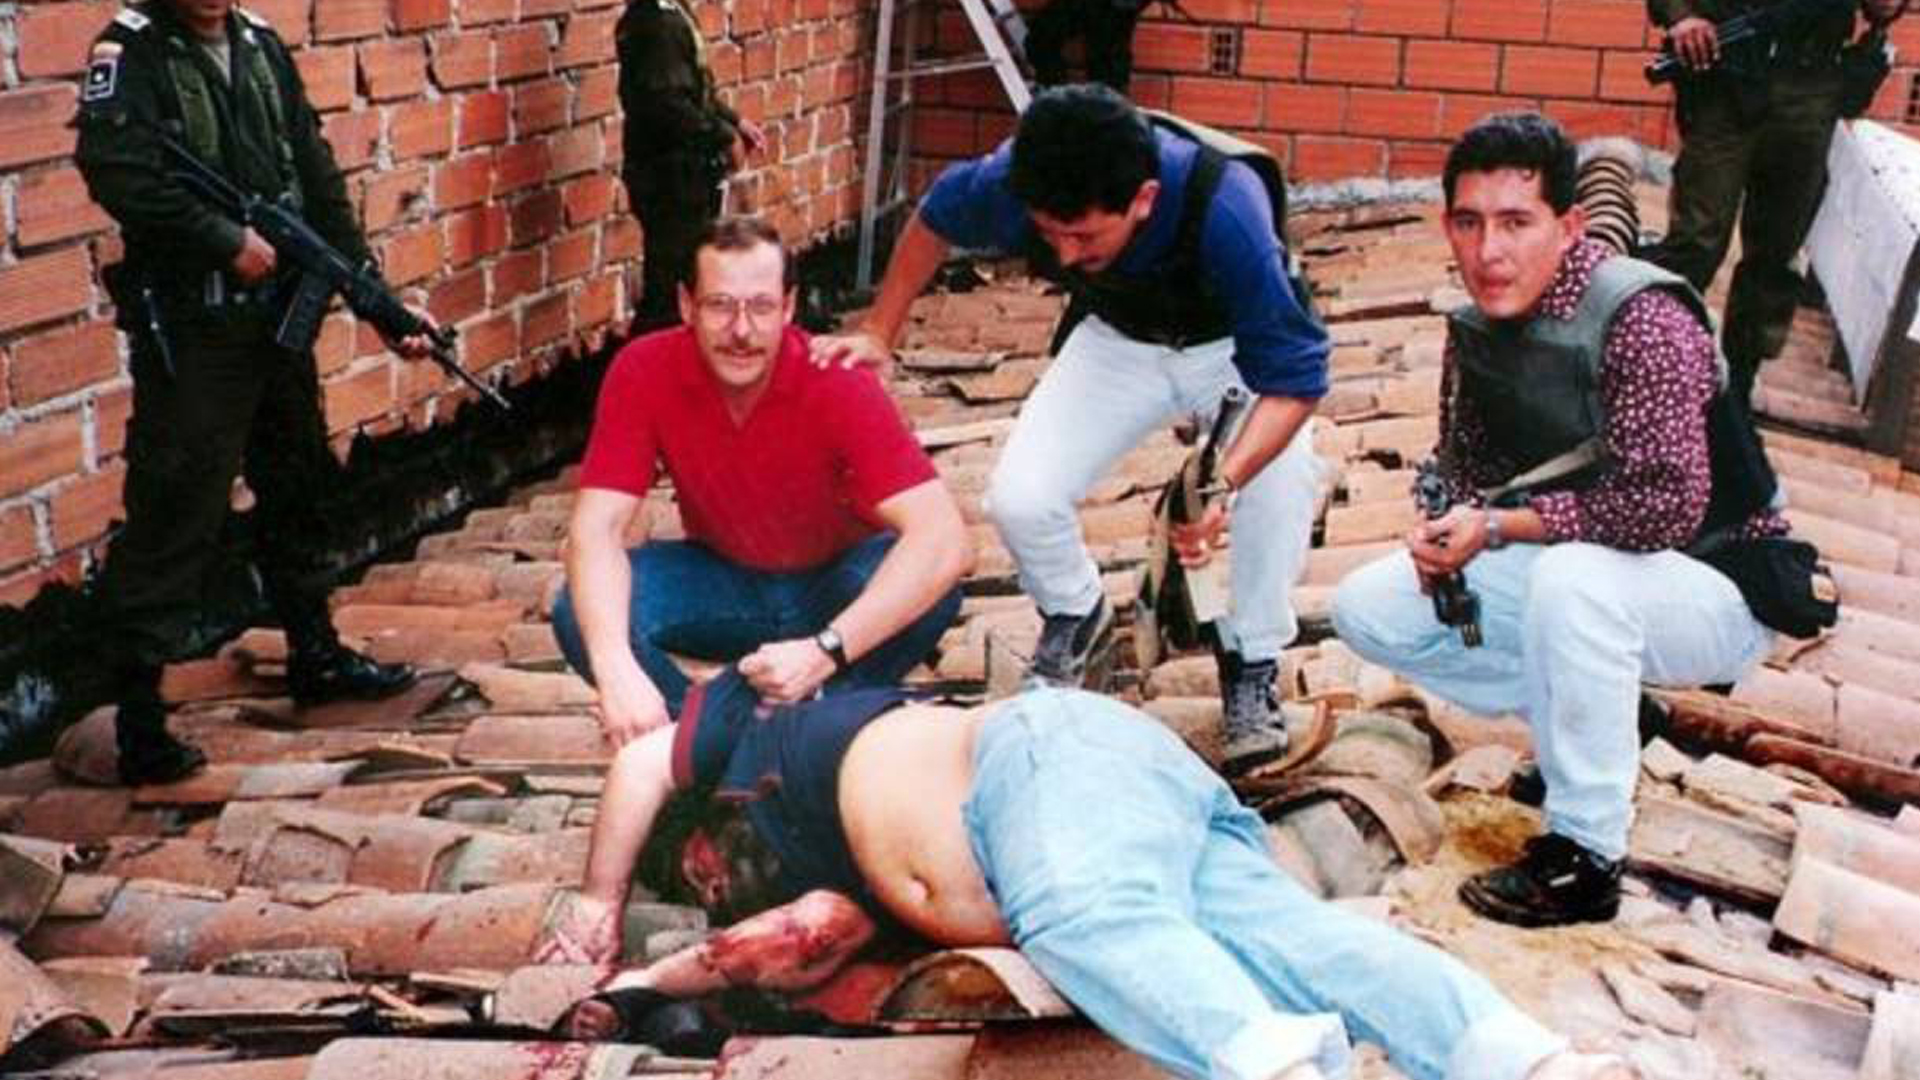 El 2 de diciembre de 1993 Pablo Emilio Escobar Gaviria fue muerto a balazos por el Bloque de Búsqueda mientras huía descalzo por un tejado en Medellín